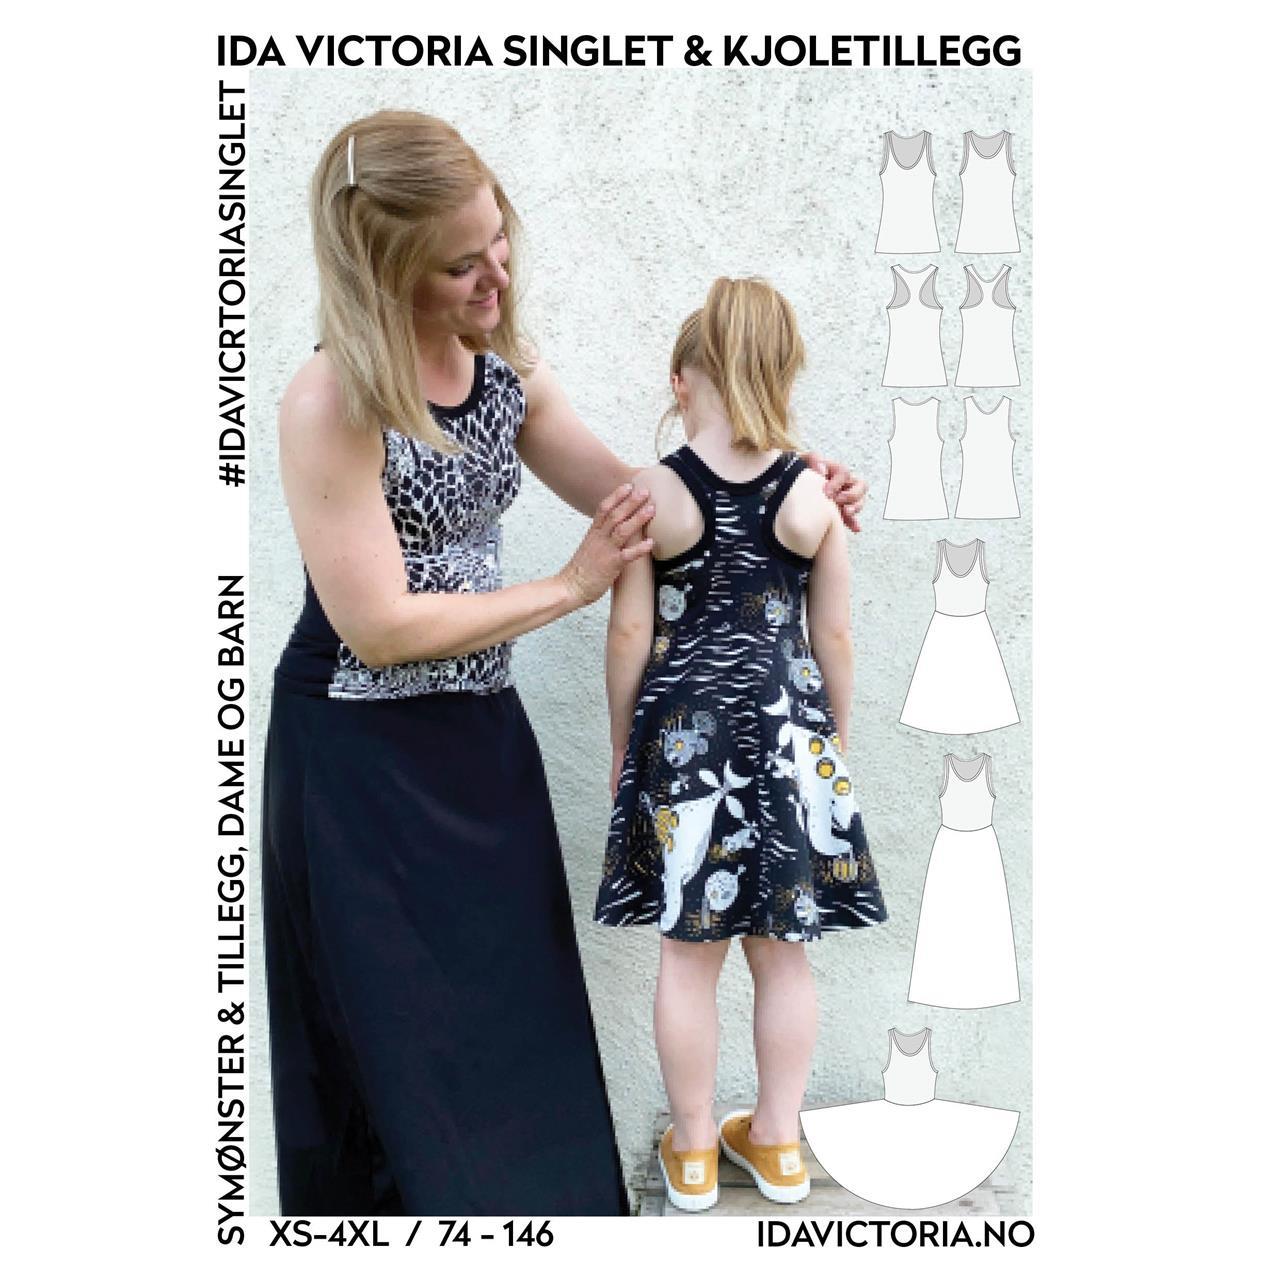 Ida Victoria singlet & kjoletillegg